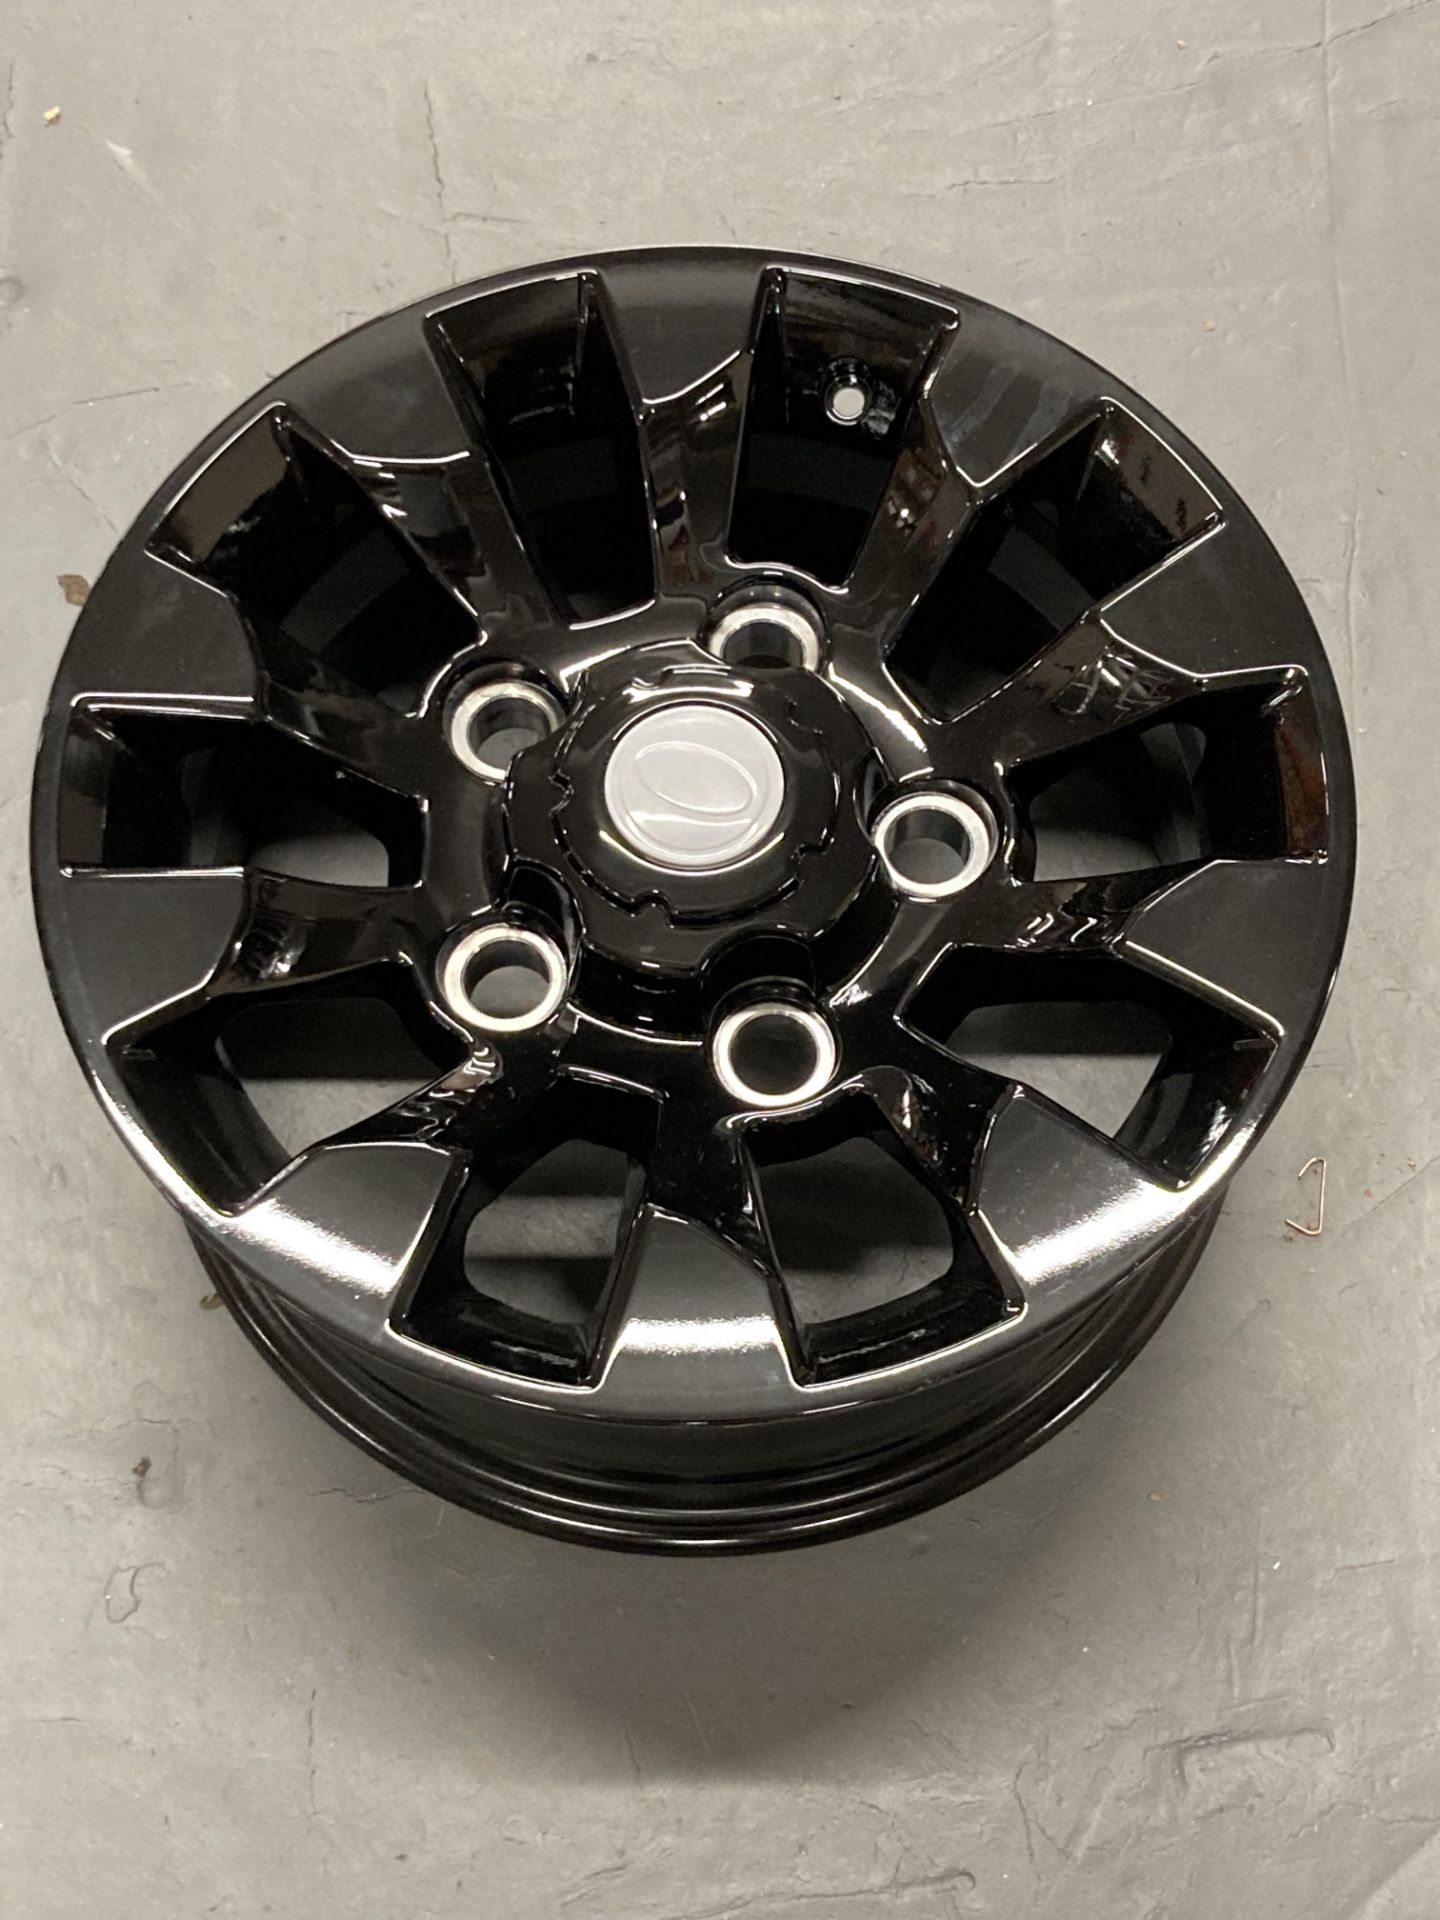 An un-used alloy wheel